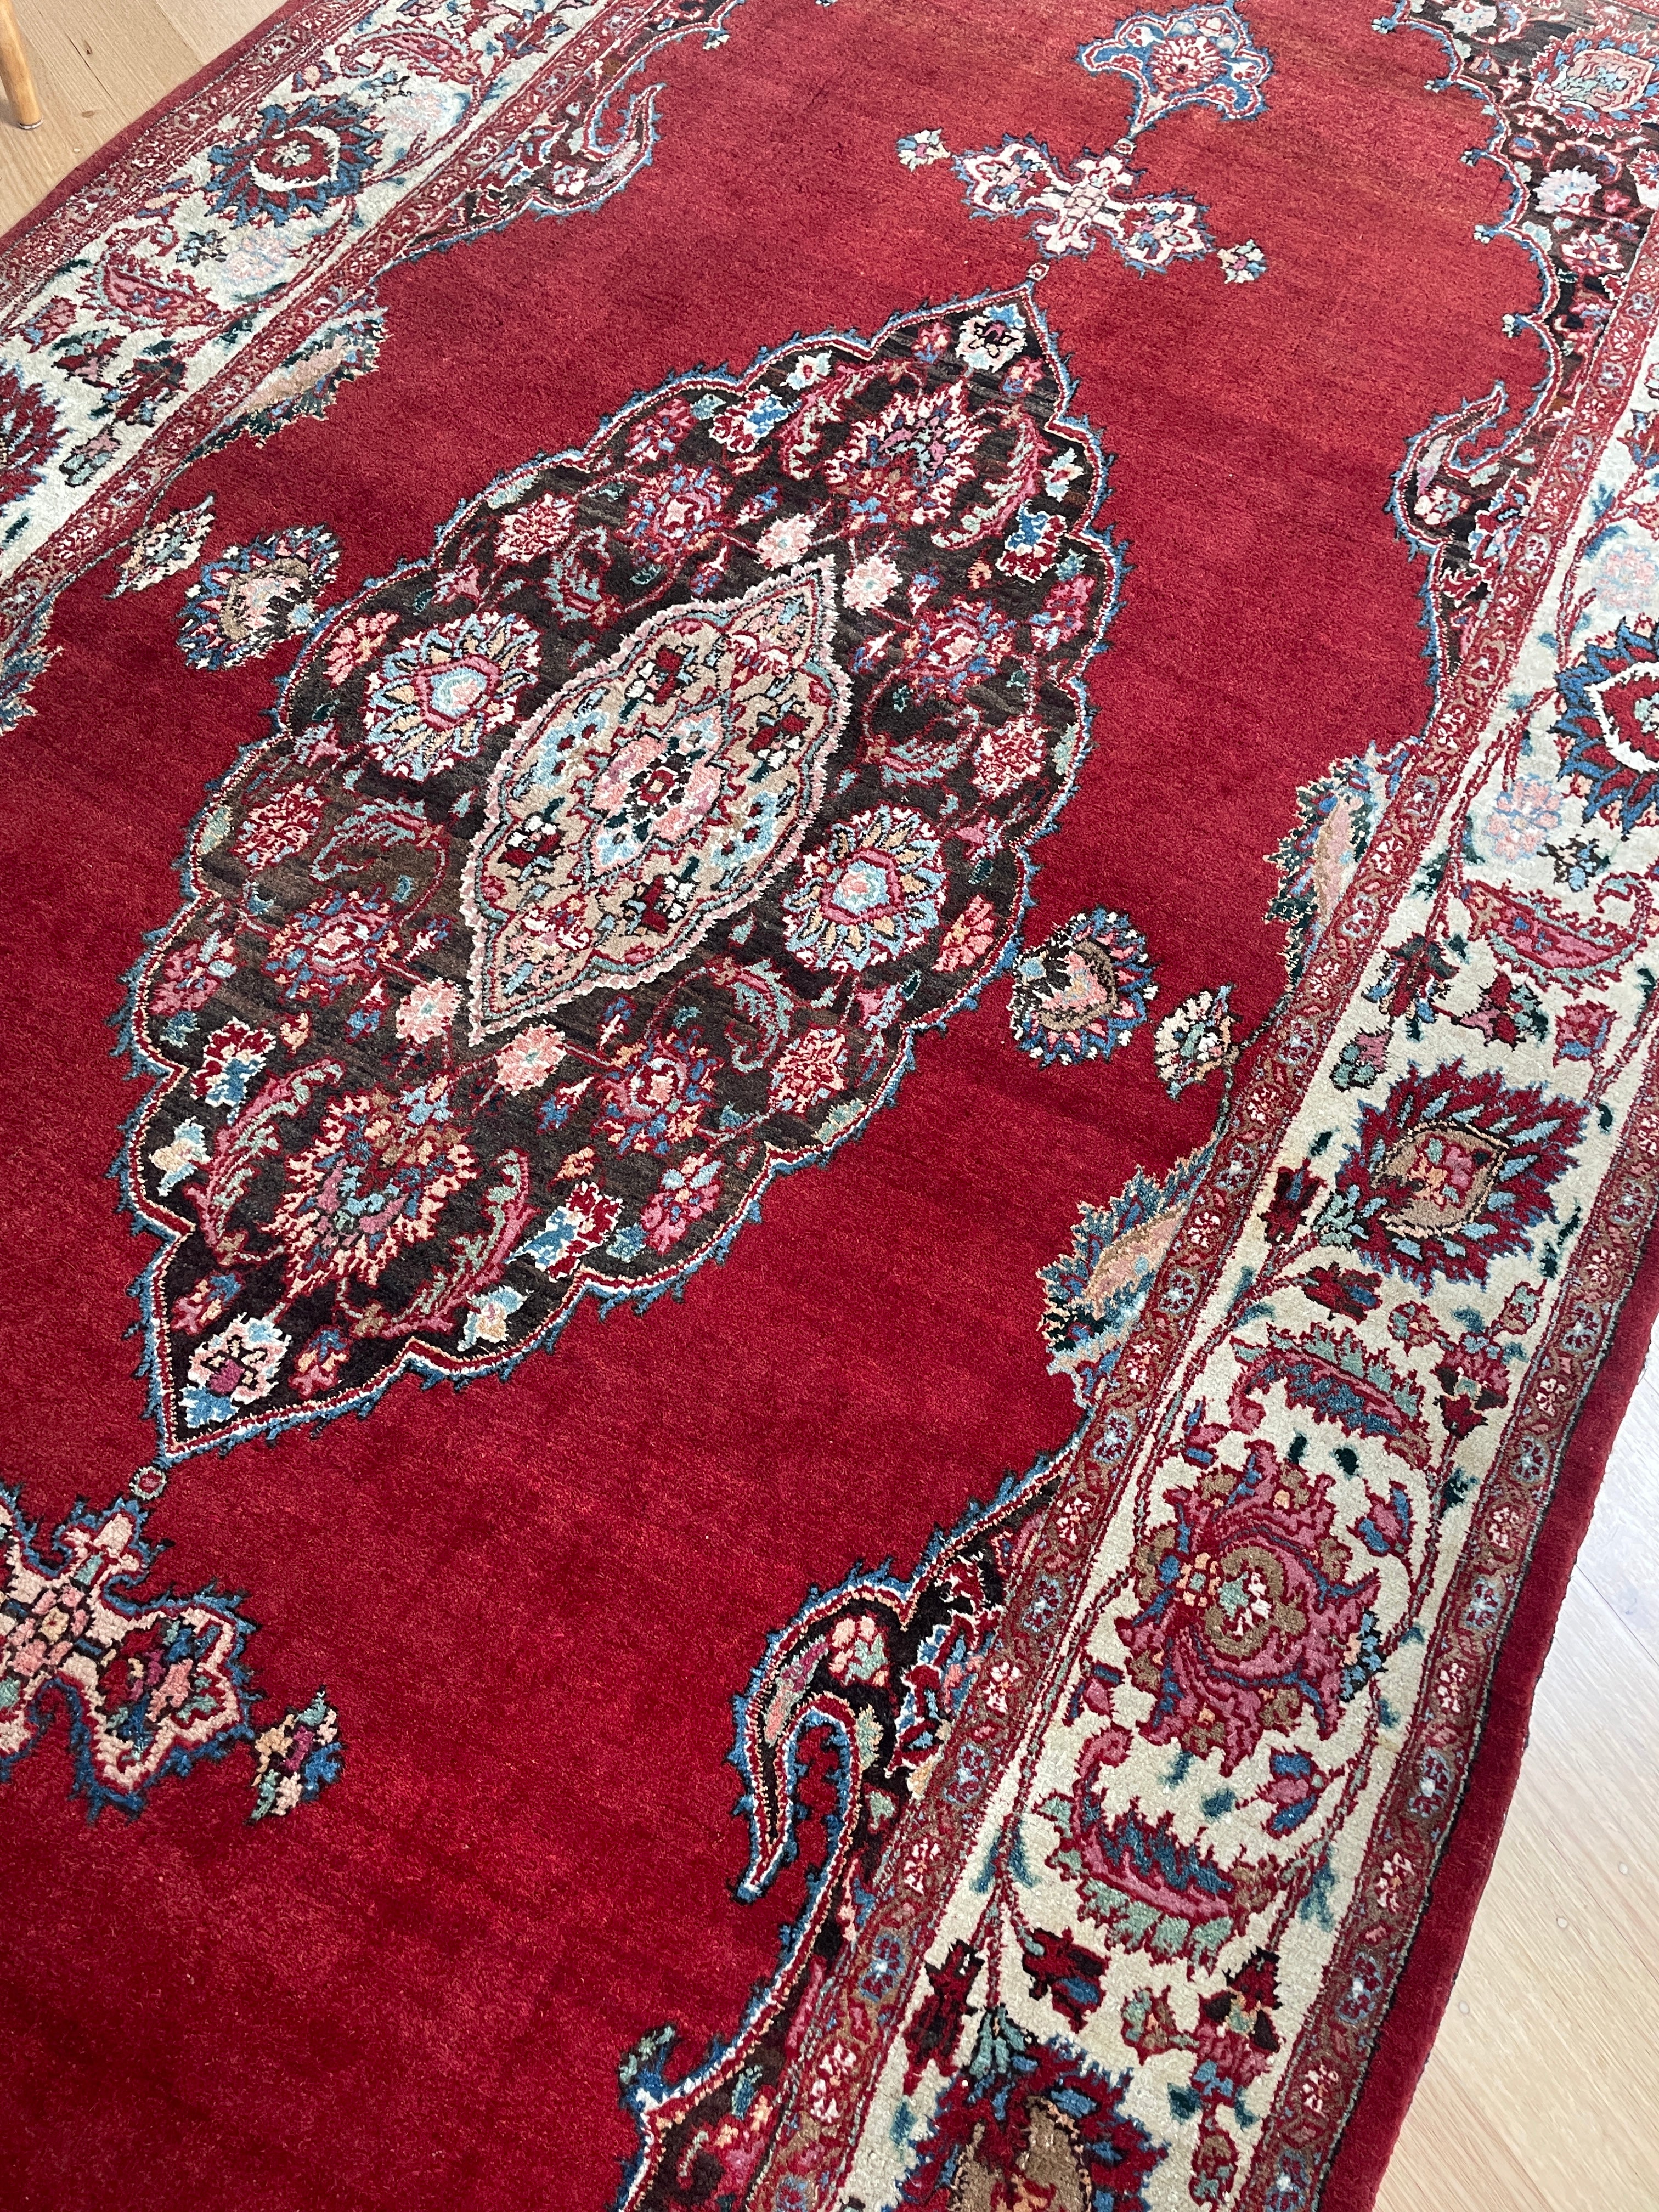 Vintage Persian wool silk rug 3 meters